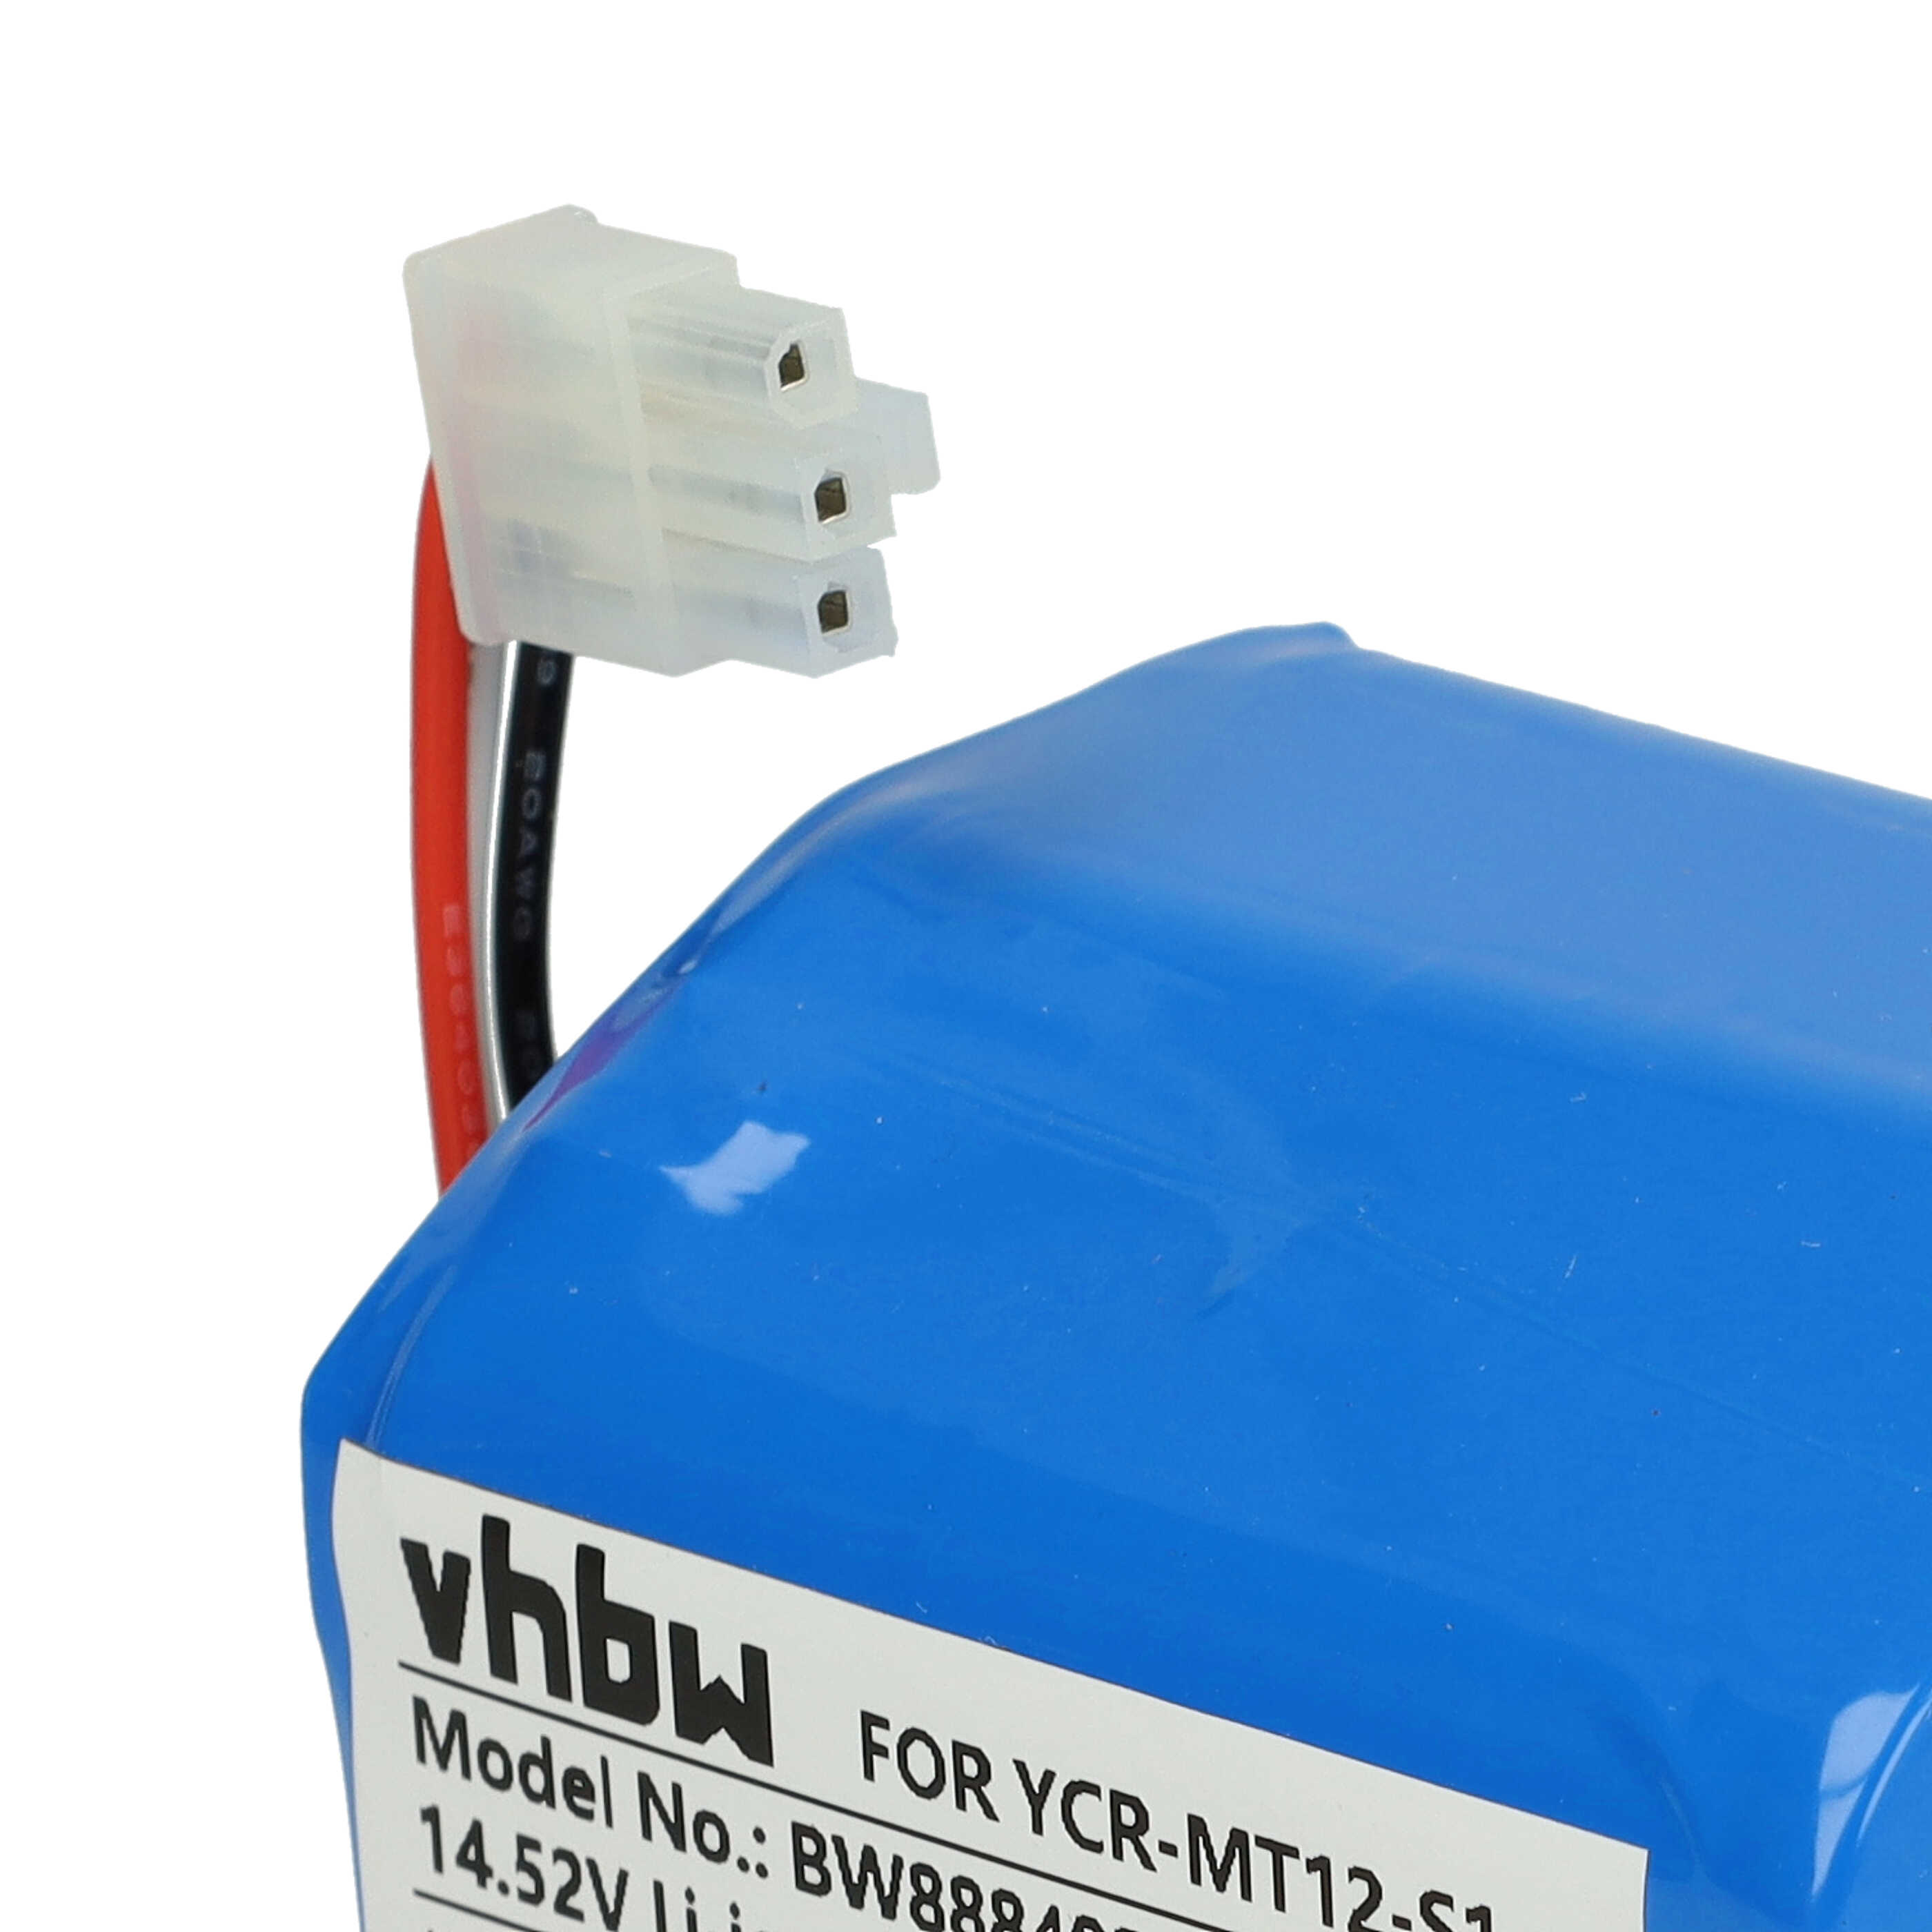 Batería reemplaza iClebo YCR-M07-20W, YCR-MT12-S1 para robot doméstico iClebo - 6000 mAh 14,52 V Li-Ion